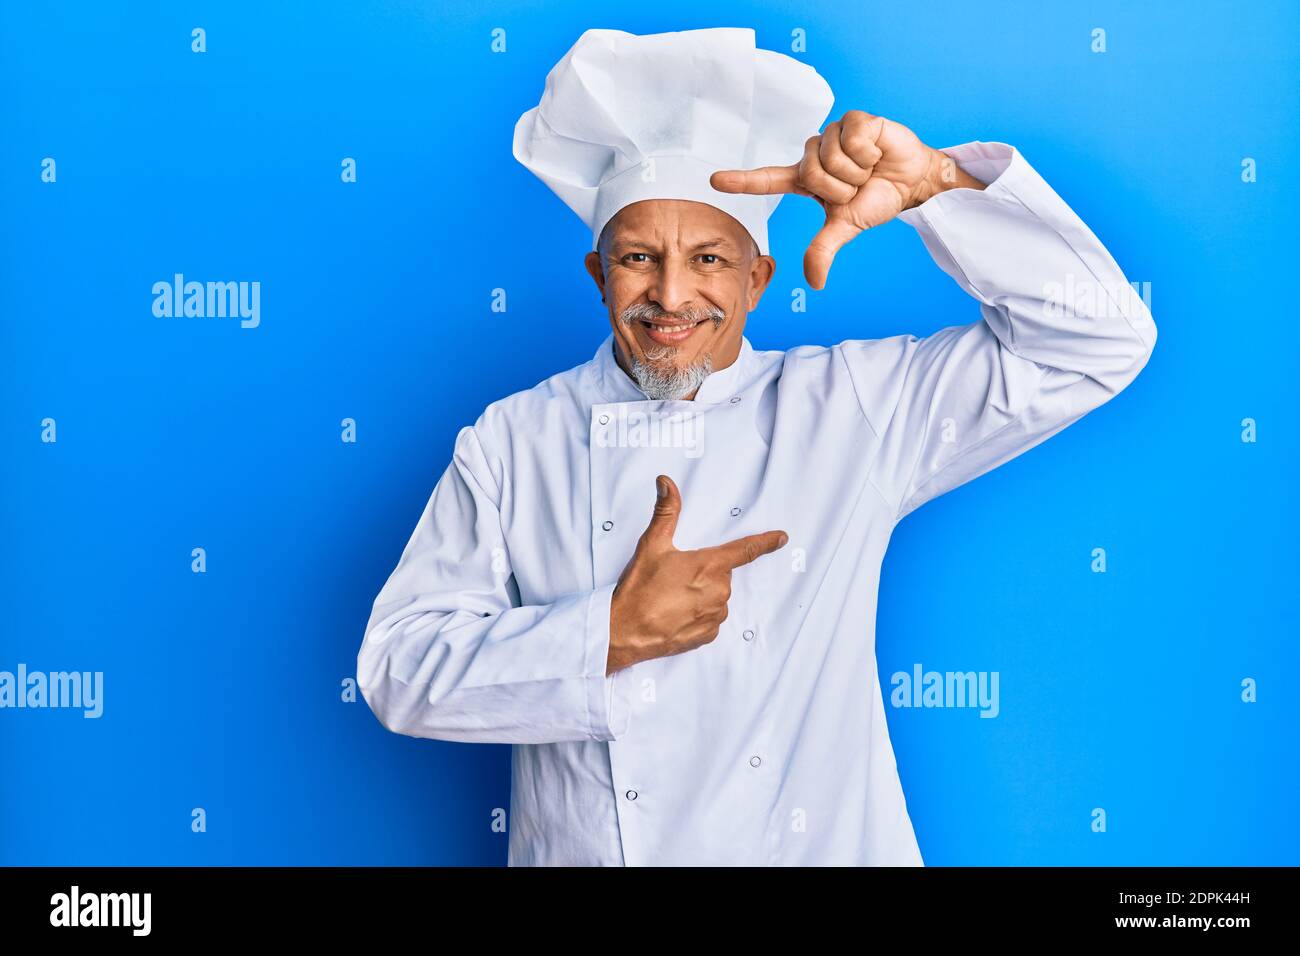 Uomo di media età con capelli grigi e uniforme professionale cuoco